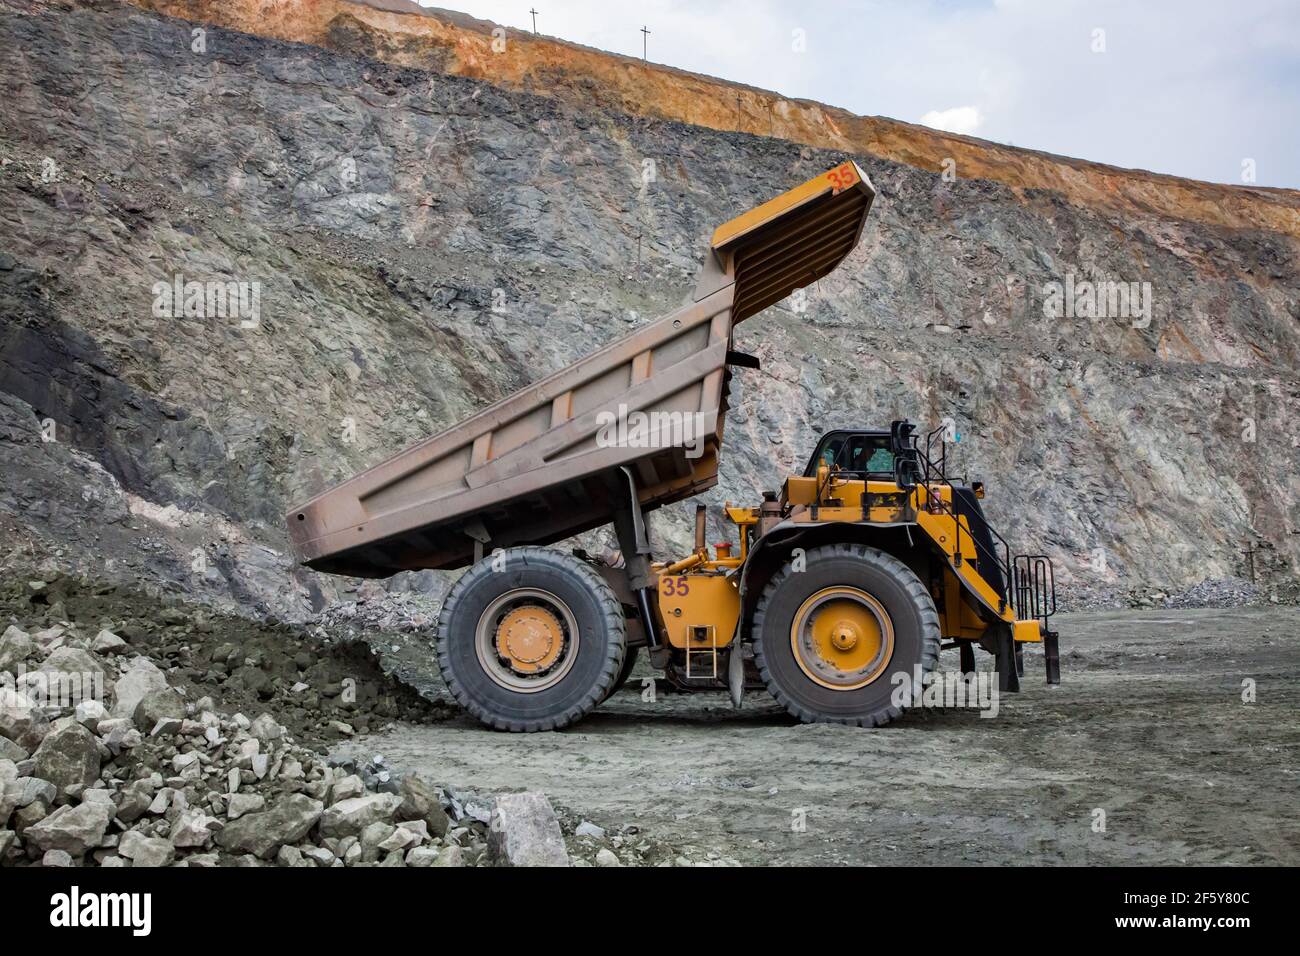 Rudny/Kazakhstan - Maggio 14 2012: Miniera a cielo aperto di minerale di ferro in cava. Macchina per lo scarico di autocarri da cava Caterpillar. Foto Stock